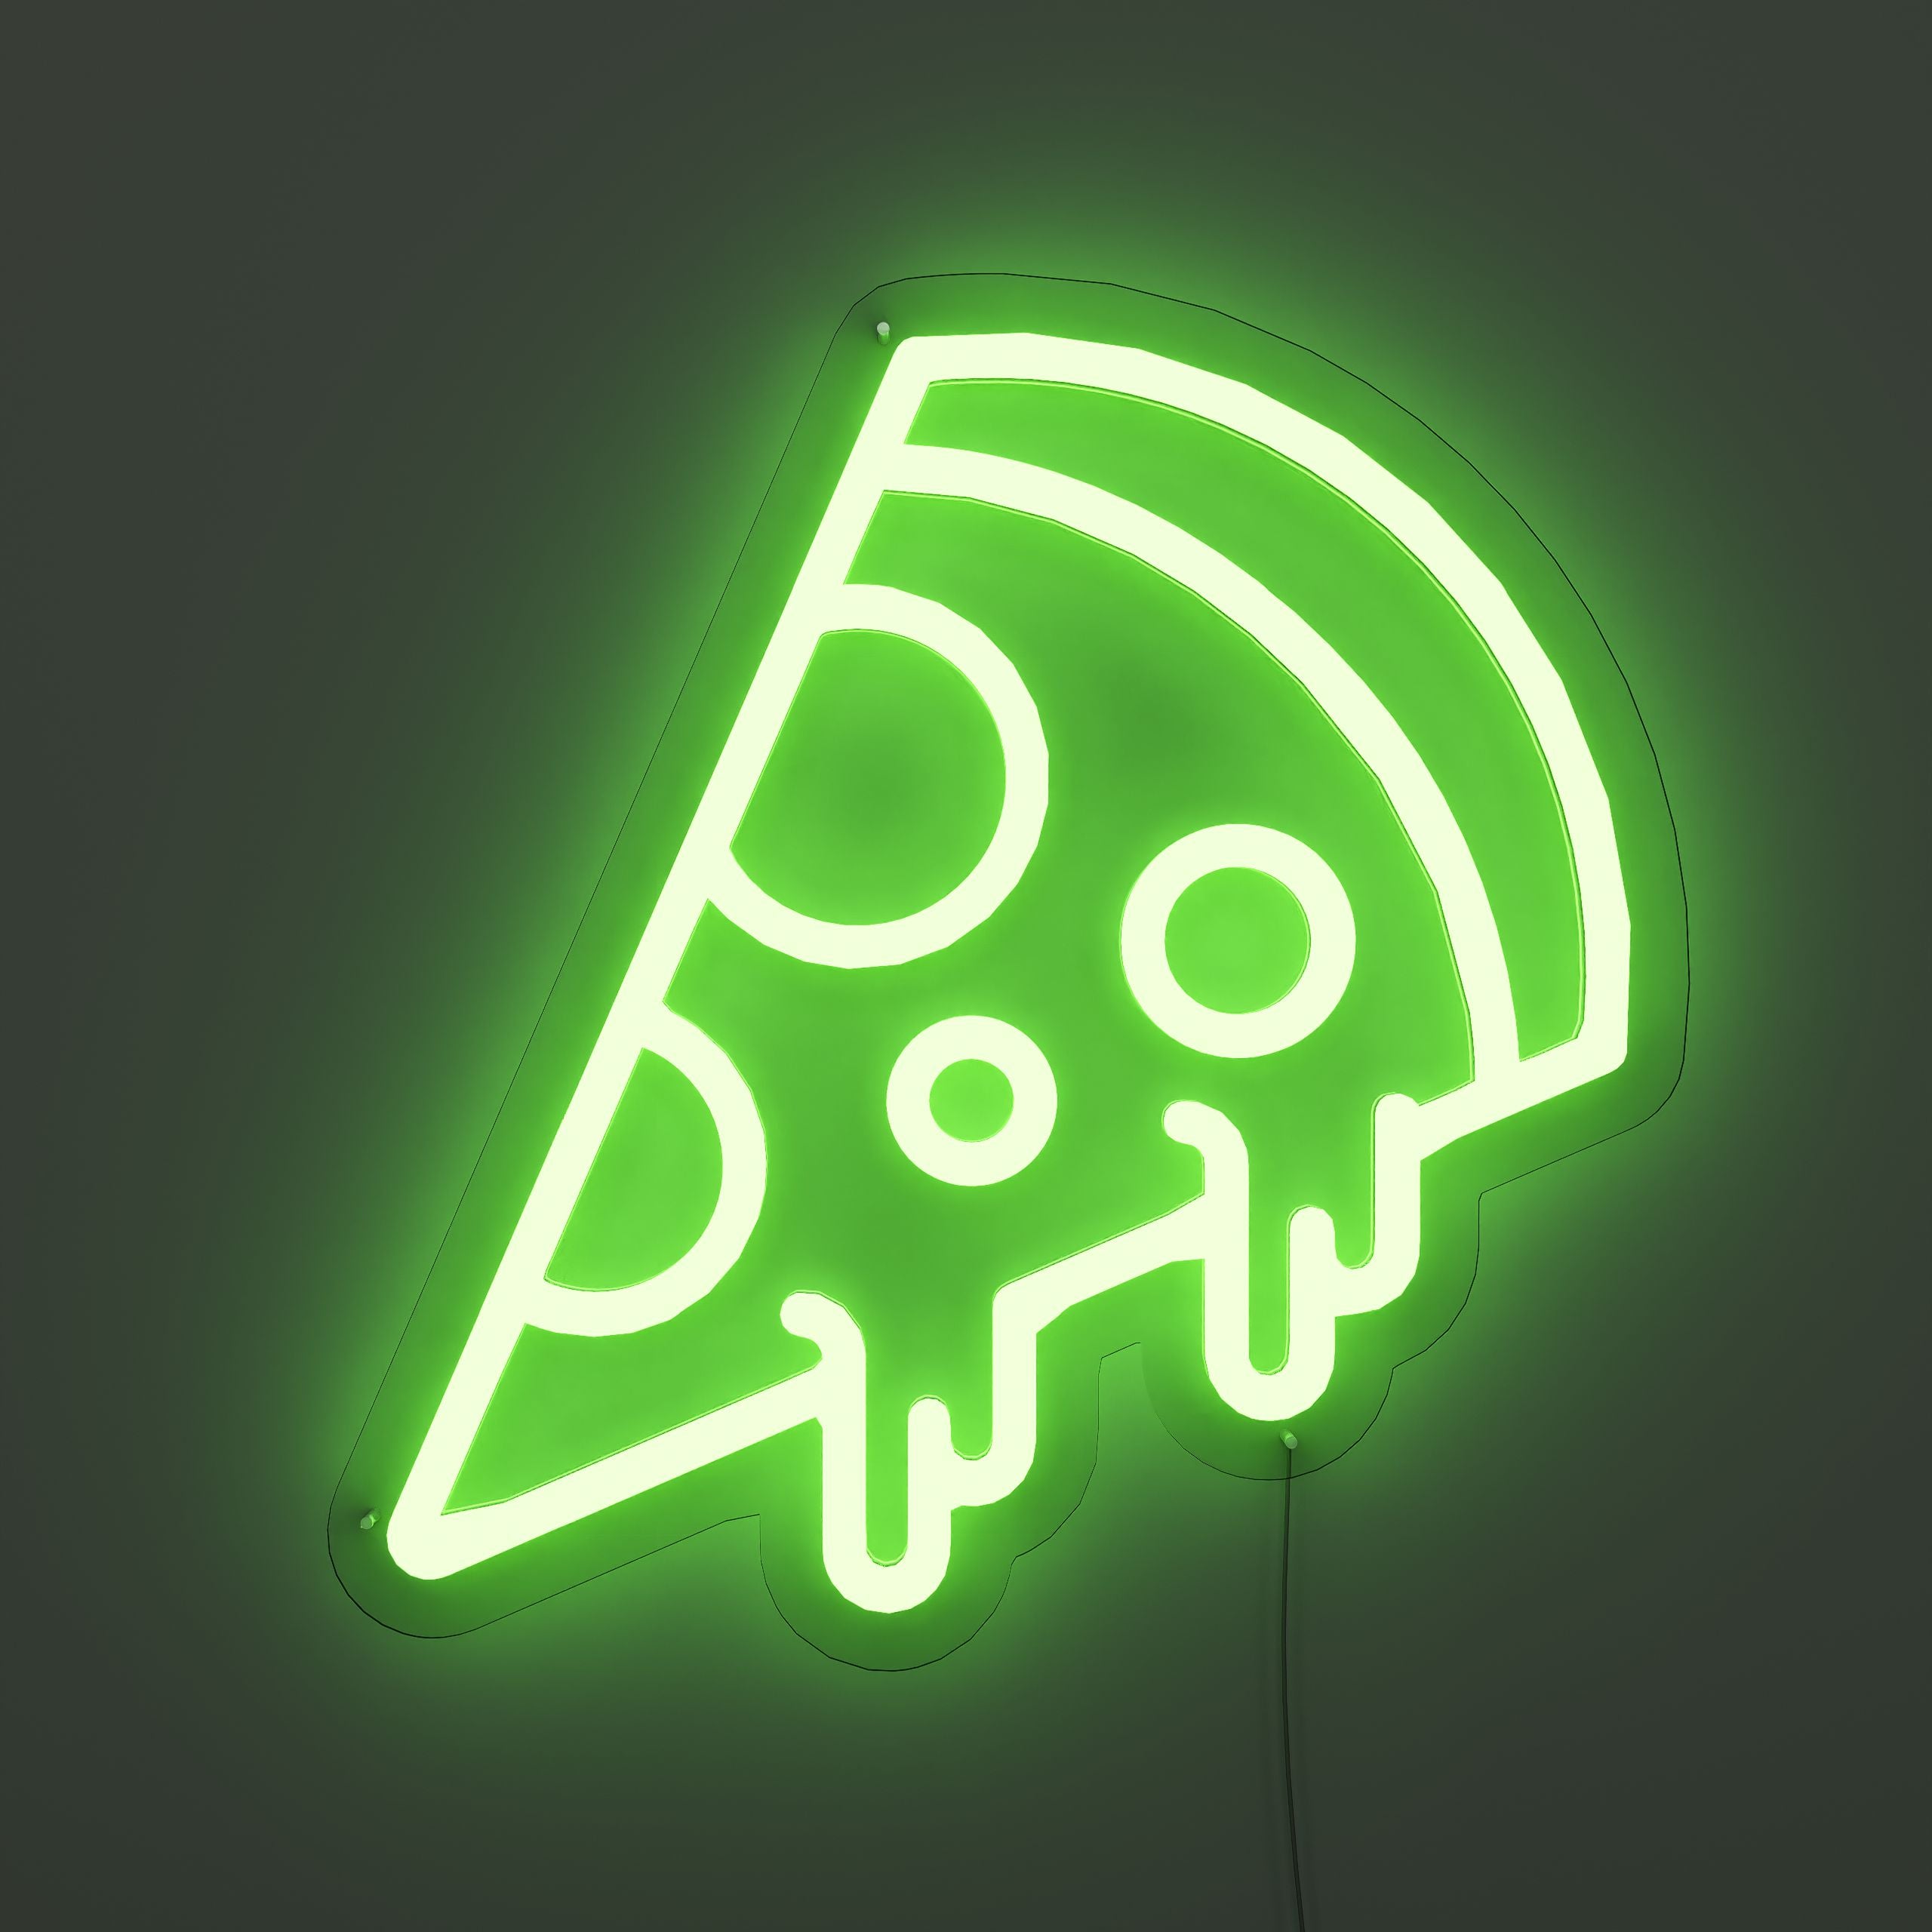 Pizza-Lover's-Dream-Neon-Sign-Lite